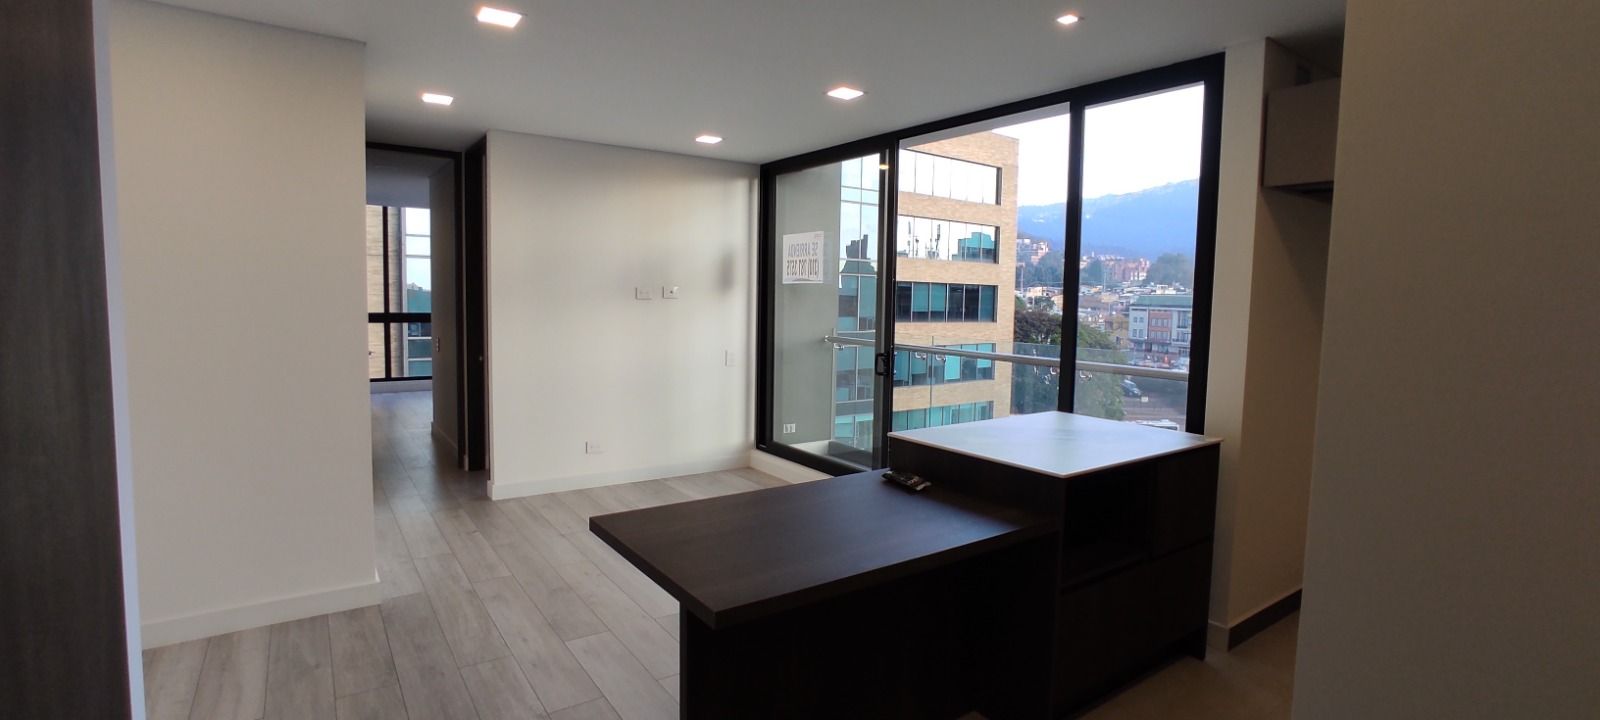 Apartamento en arriendo Santa Bárbara Oriental 64 m² - $ 3.700.000